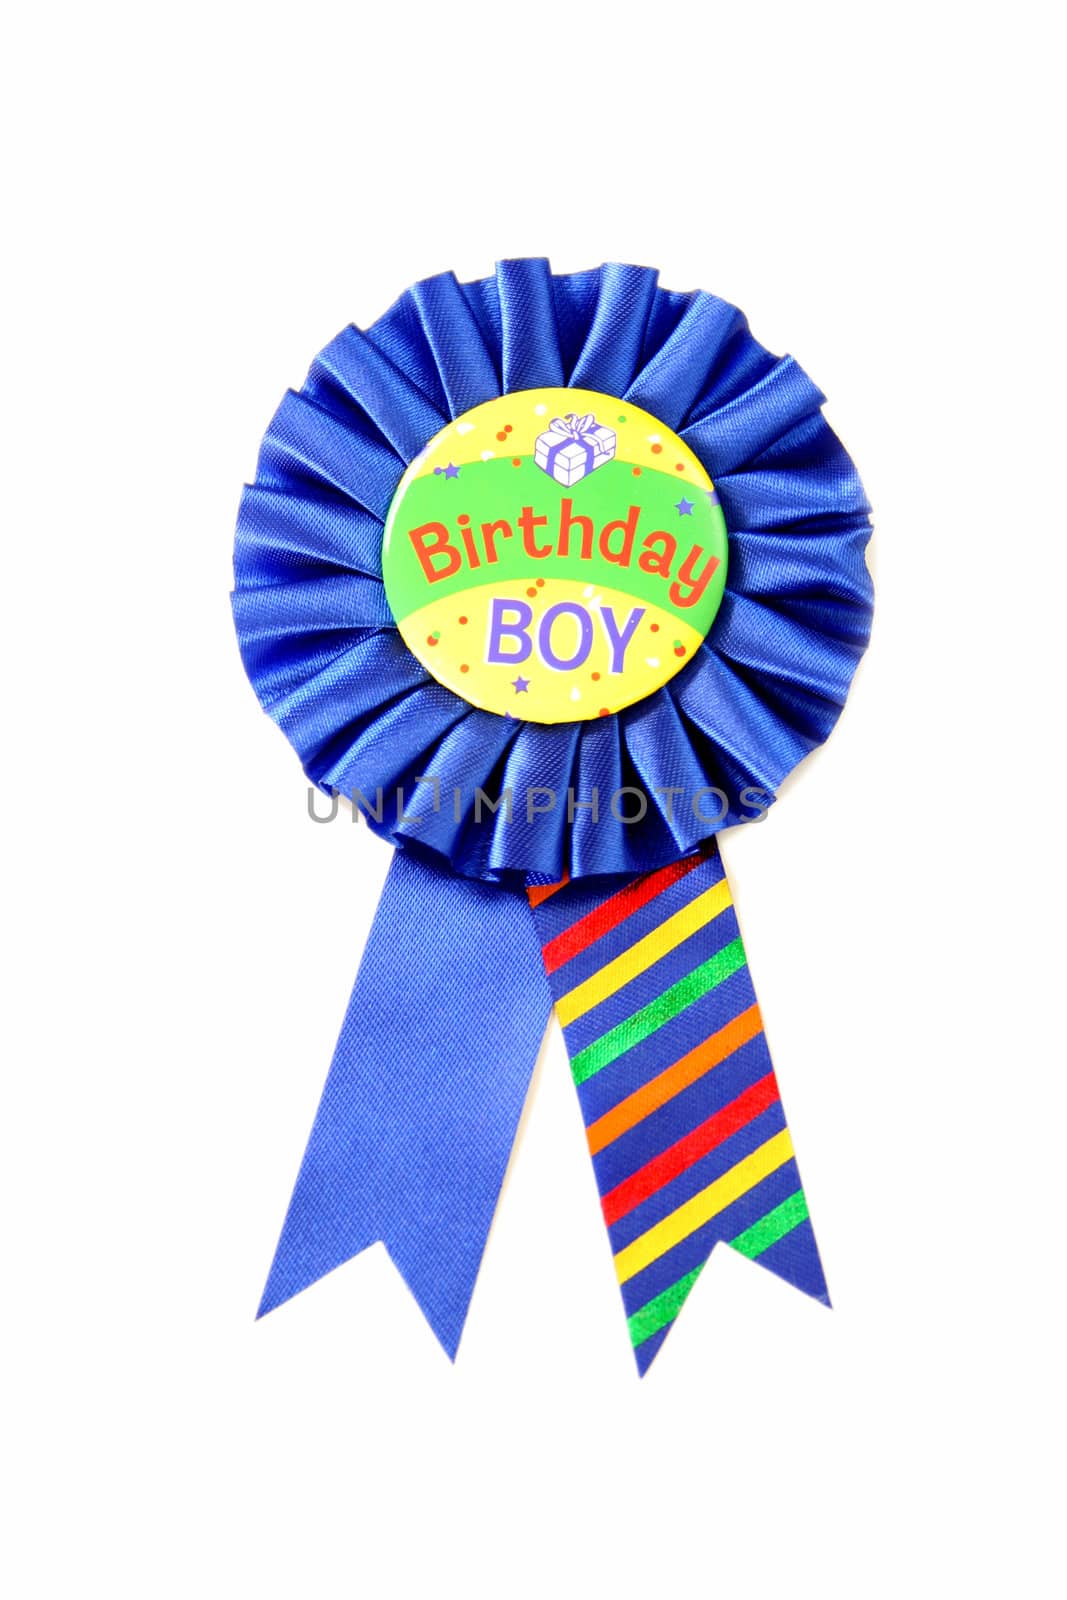 Birthday Boy Ribbon by thephotoguy